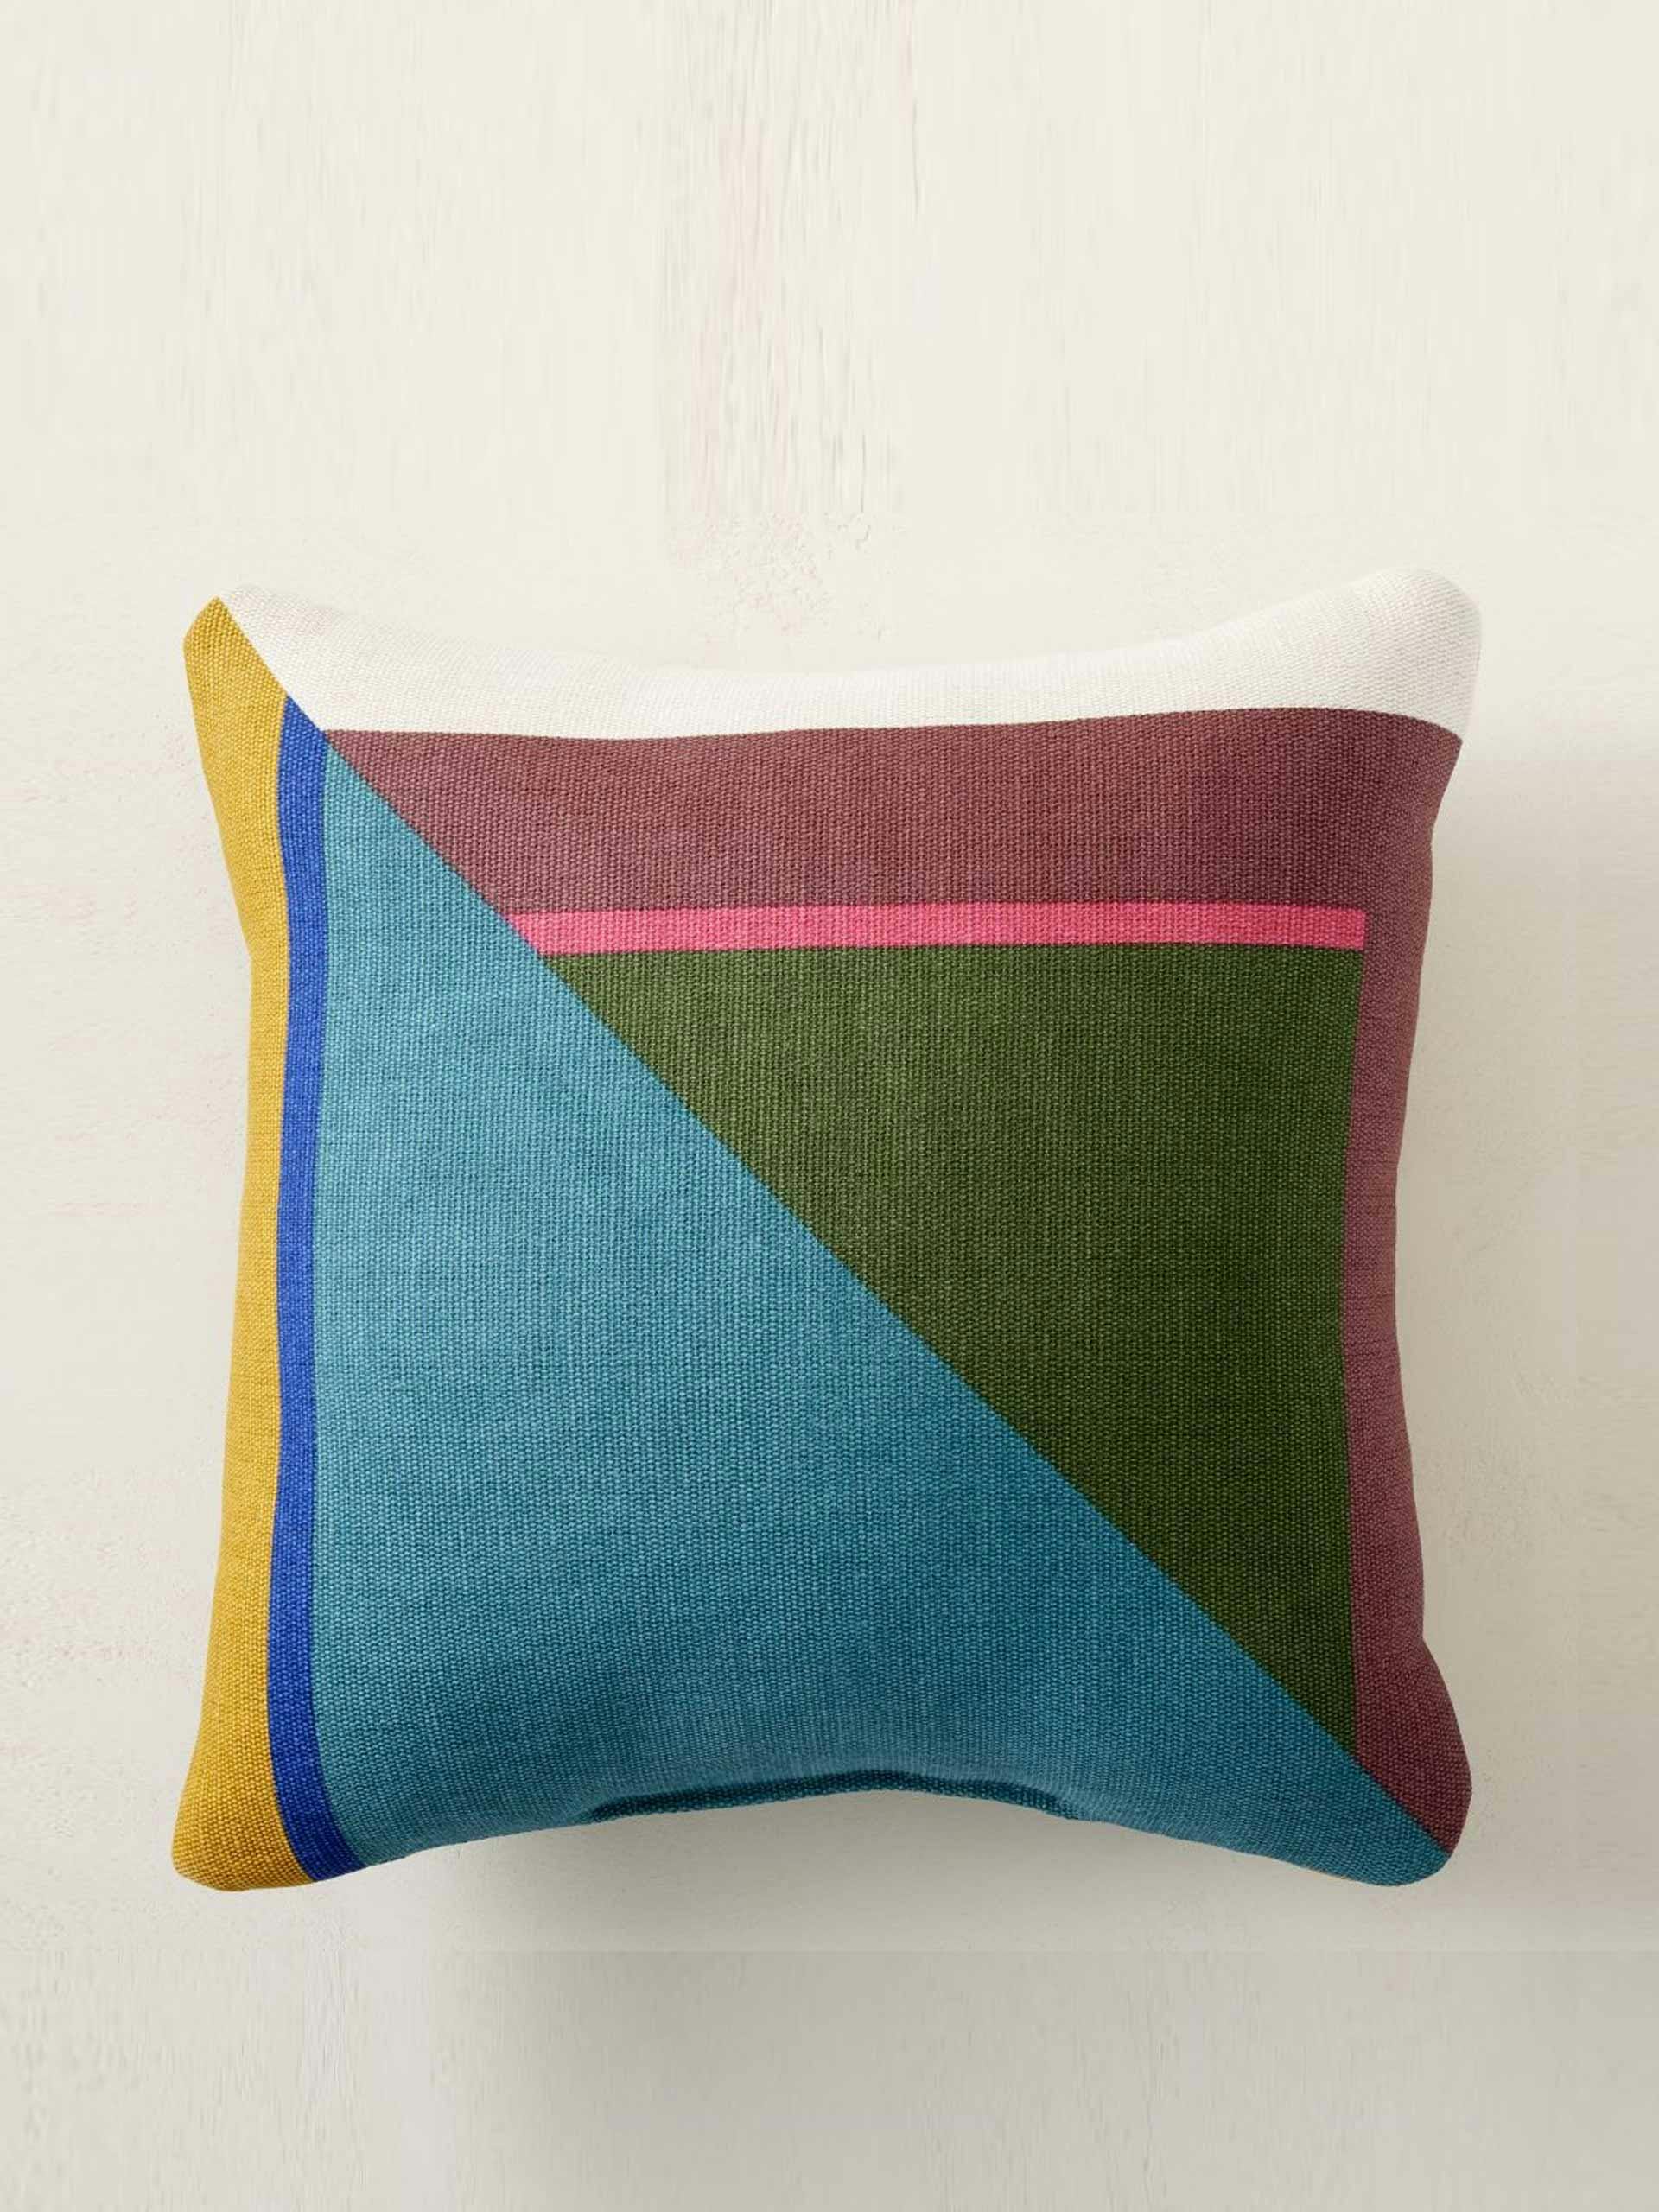 Colour-block cushion